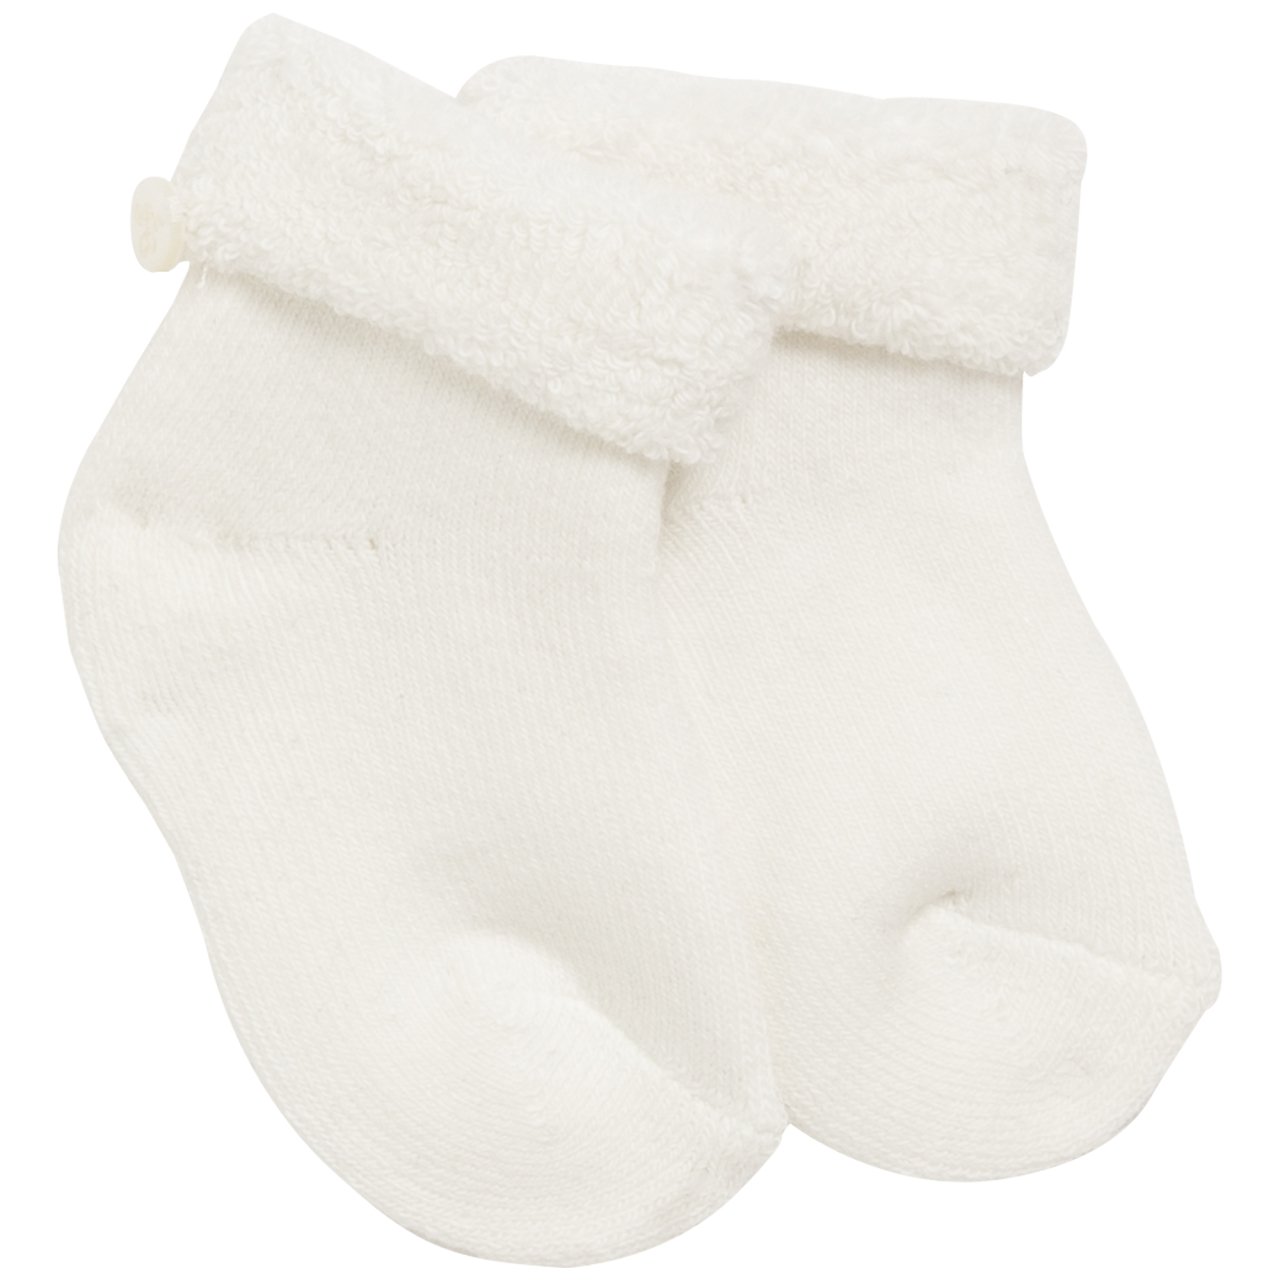 Erken Doğan (premature) Bebek Çorap